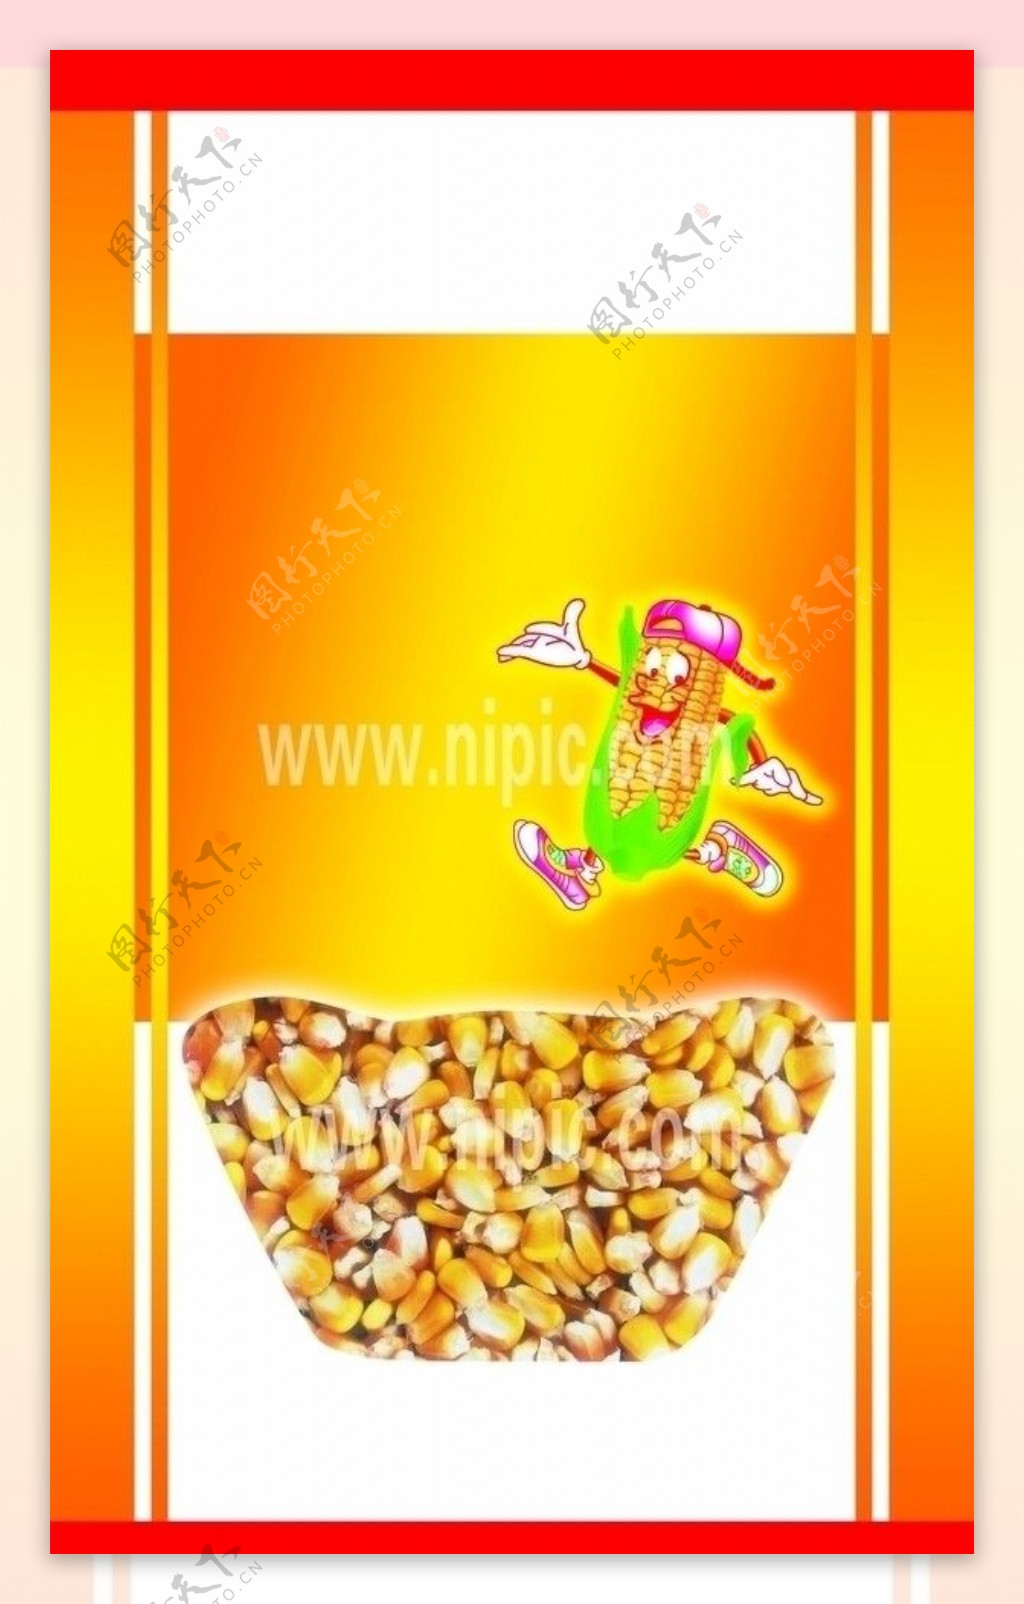 玉米糁图片